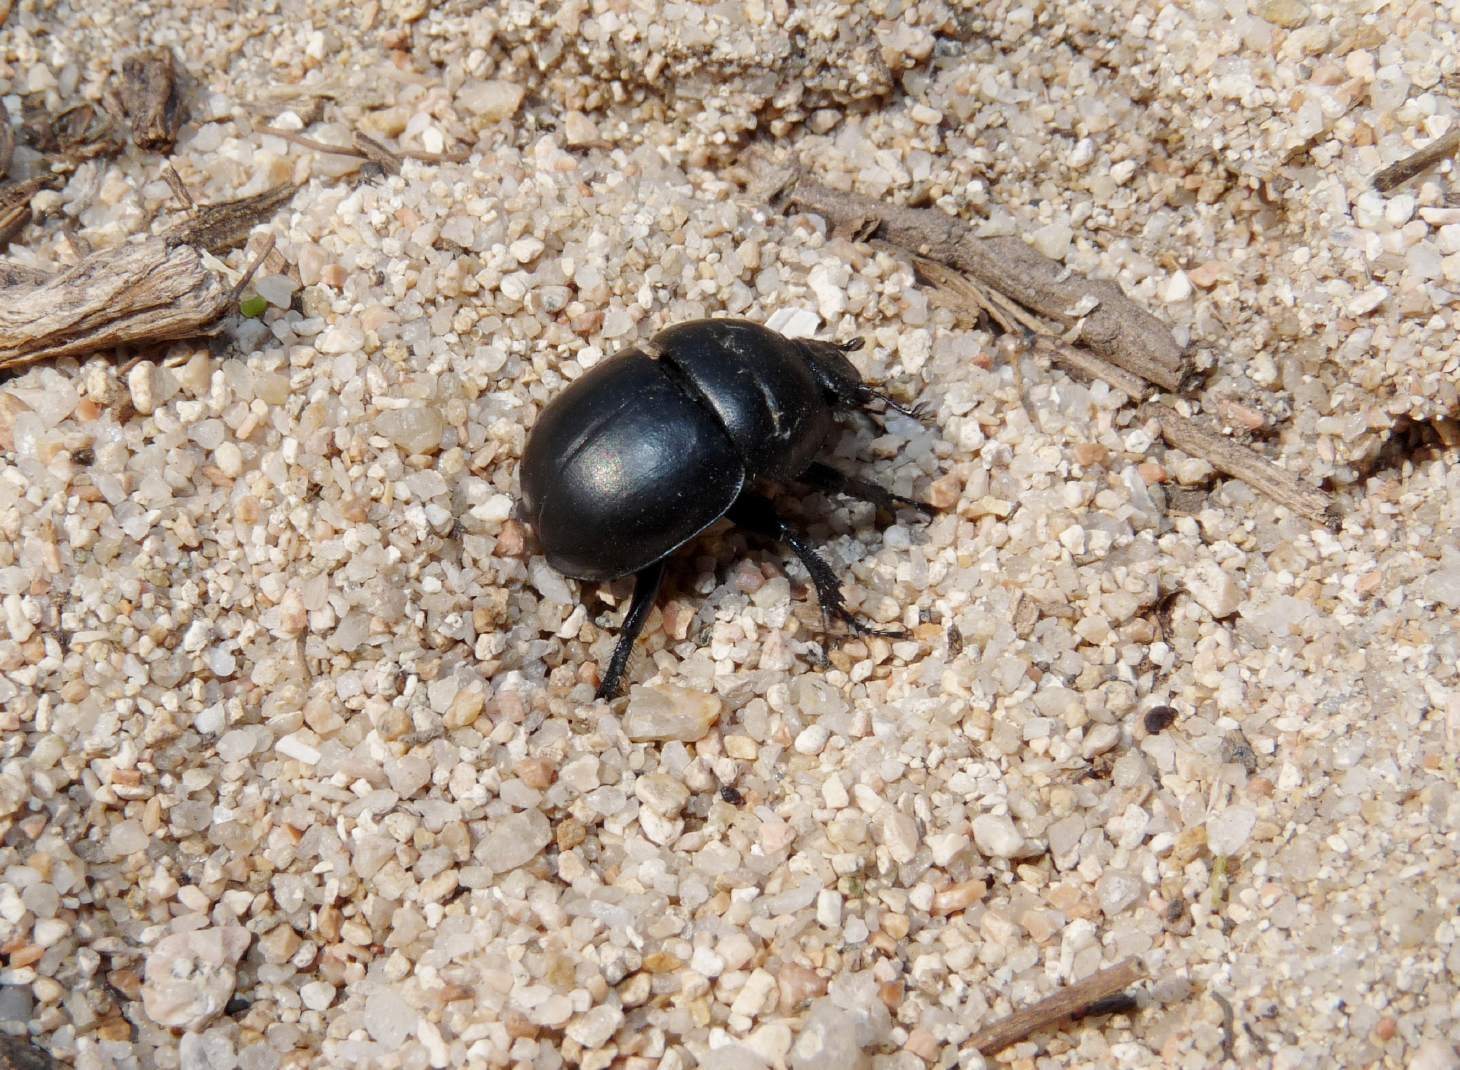 [Acanthaclisis occitanica larva] Tagliole nella sabbia